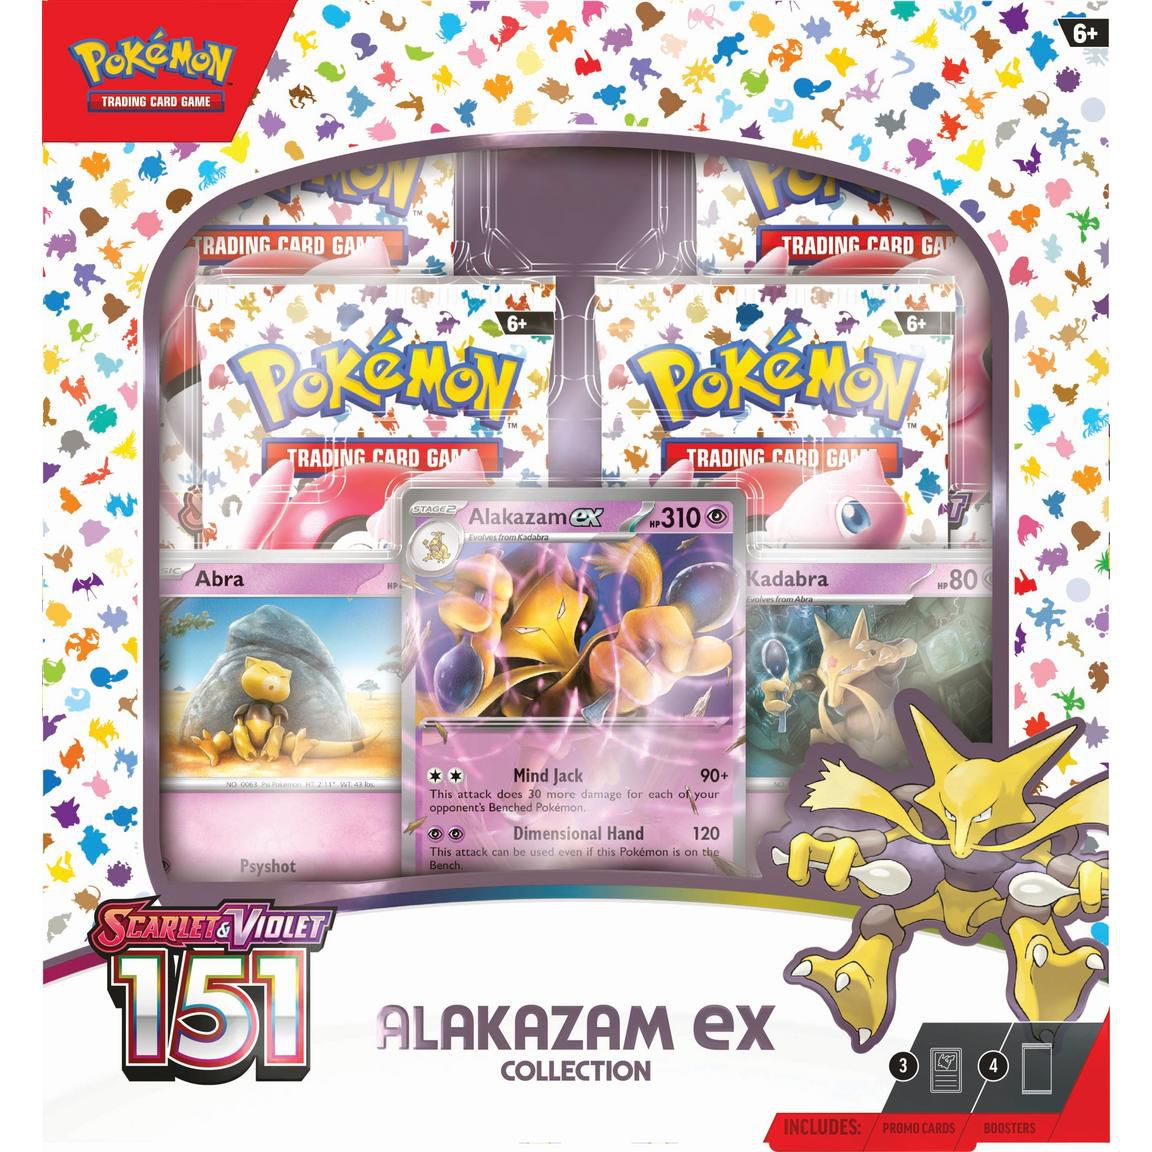 Le coffret de Pokémon Scarlet et Violet : 151 TCG Alakazam ex collection, qui présente la ligne d'évolution Alakazam.